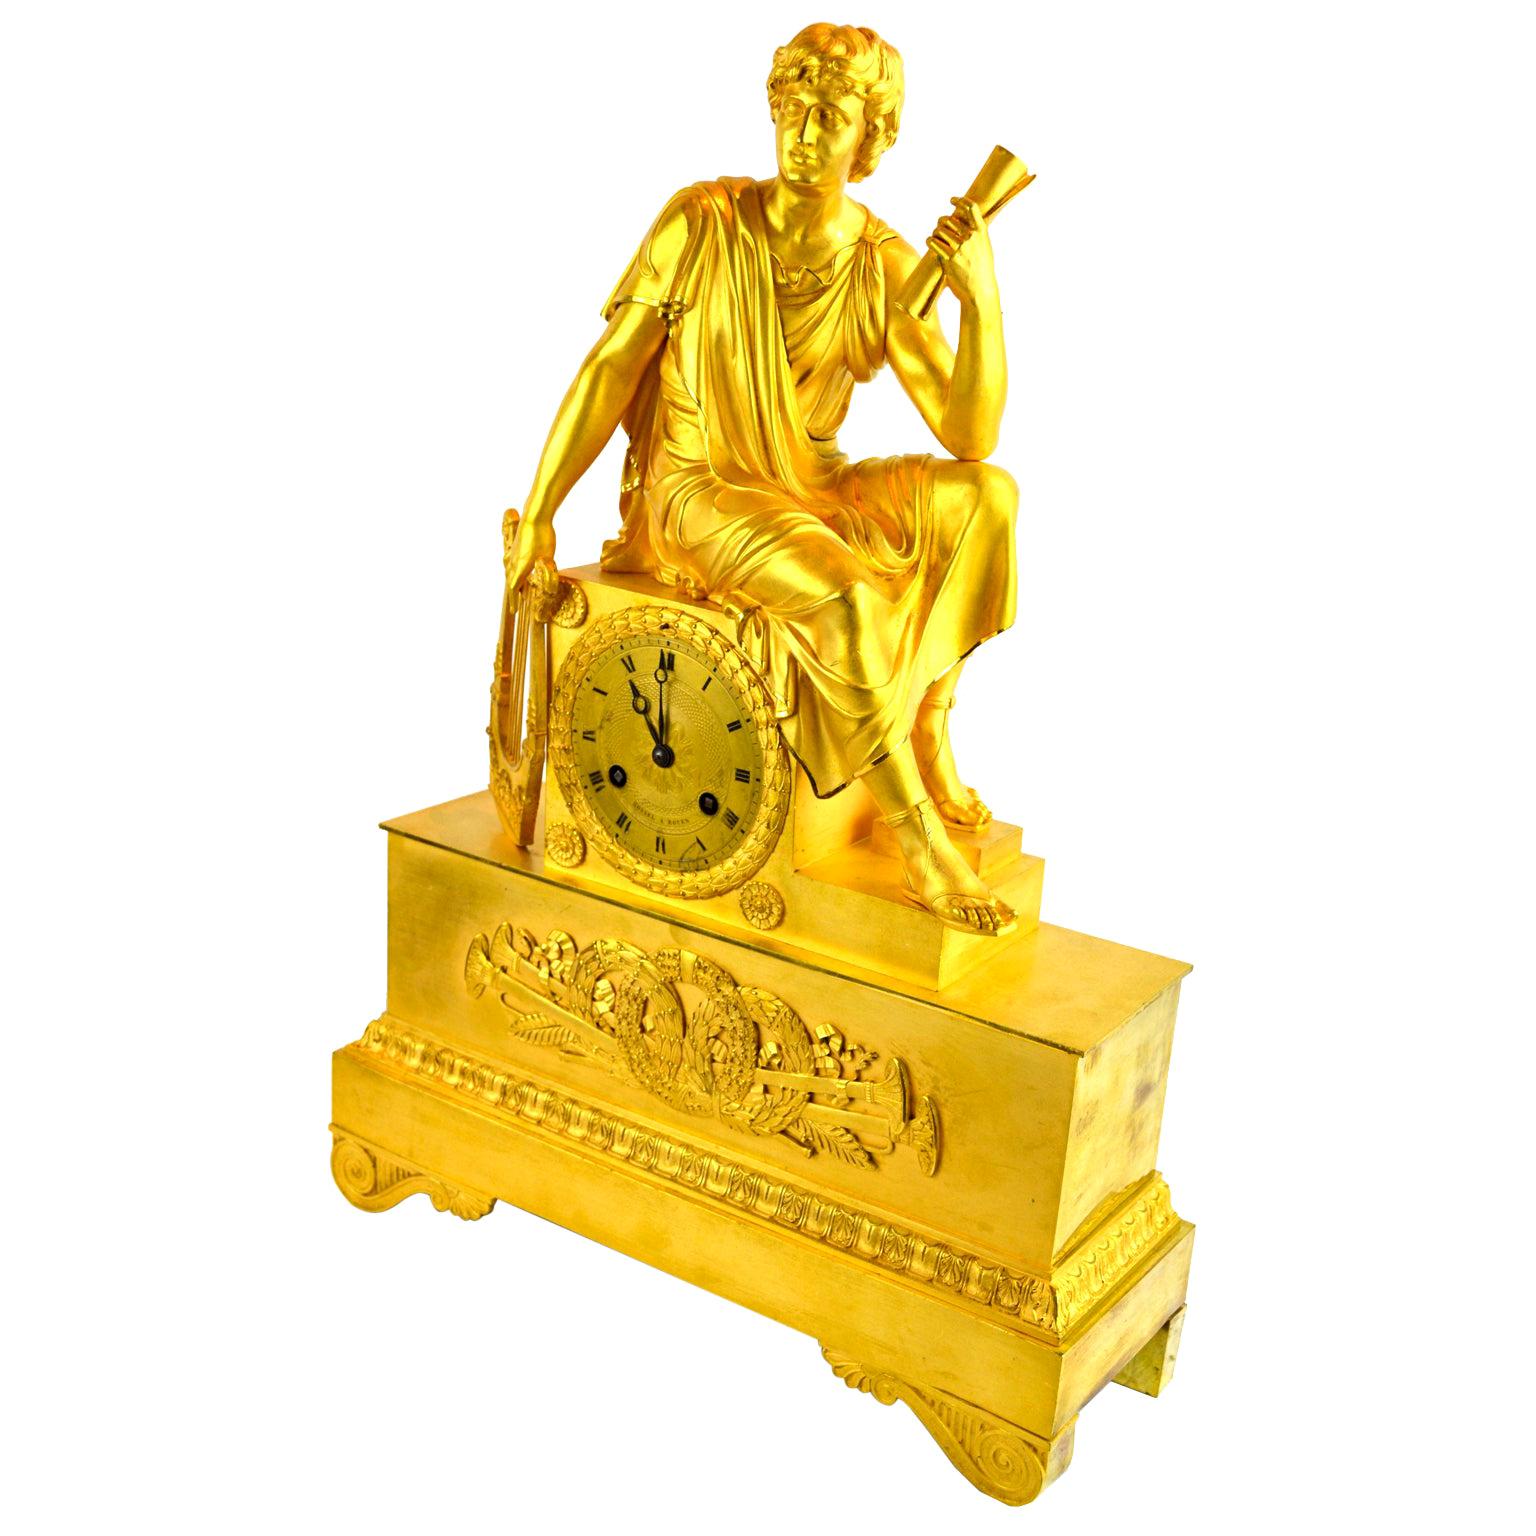 Figurative vergoldete Bronzeuhr eines römischen Jungen, der eine Schriftrolle hält, Französisches Kaiserreich